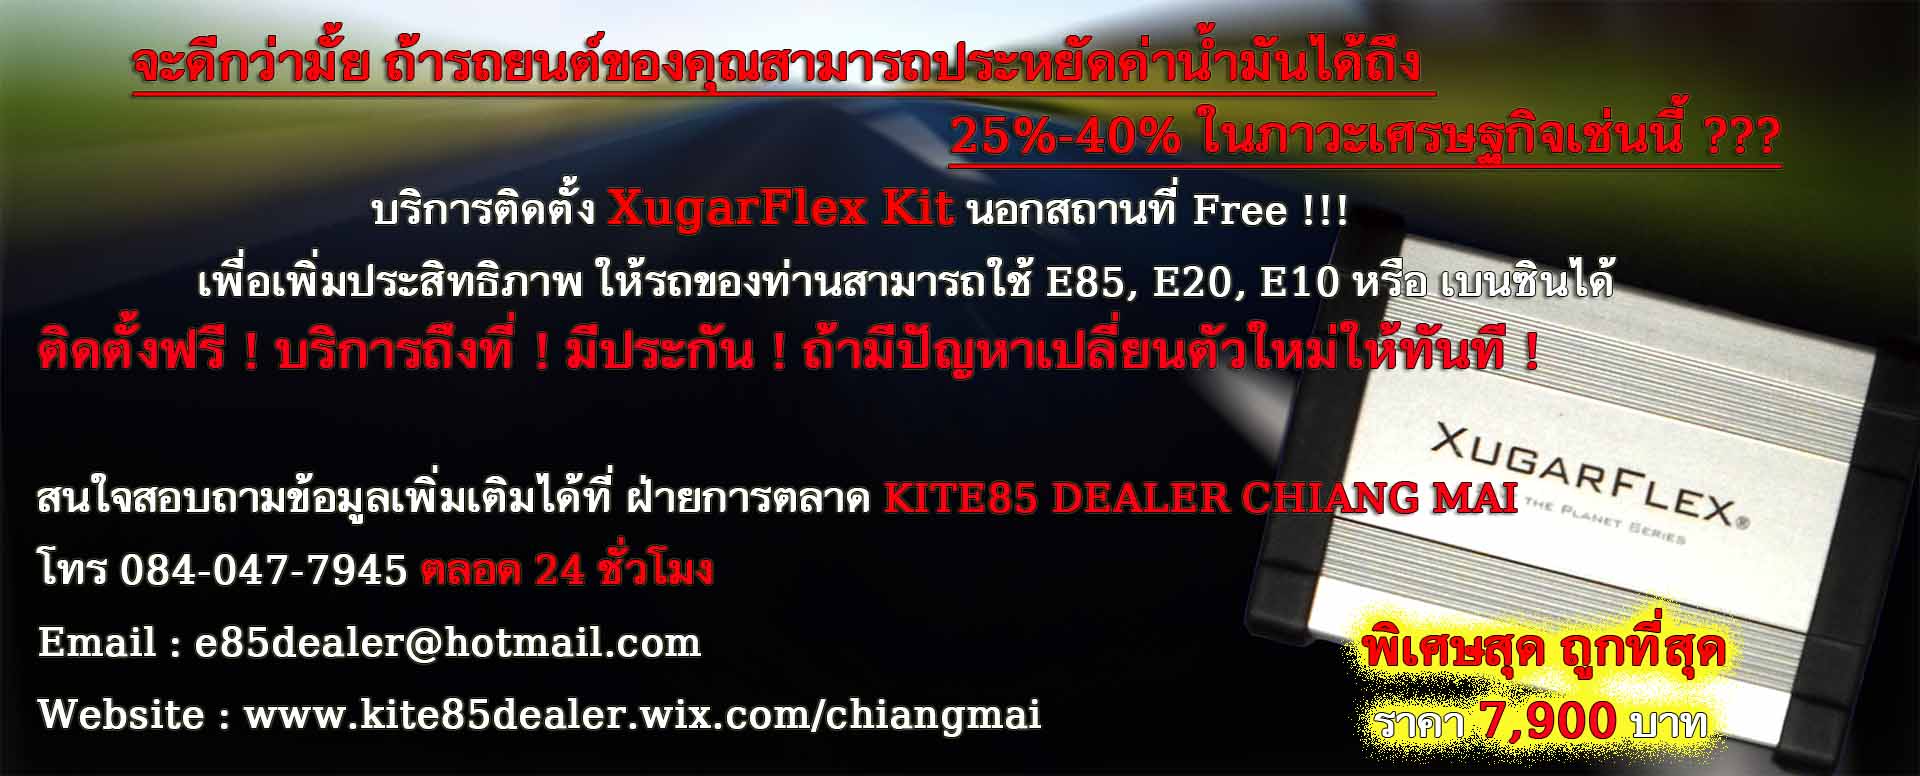 บริการติดตั้ง XugarFlex Kit นอกสถานที่ Free !!! เพื่อเพิ่มประสิทธิภาพ ให้รถของท่านสามารถใช้ E85, E20, E10 หรือ เบนซินได้ รูปที่ 1